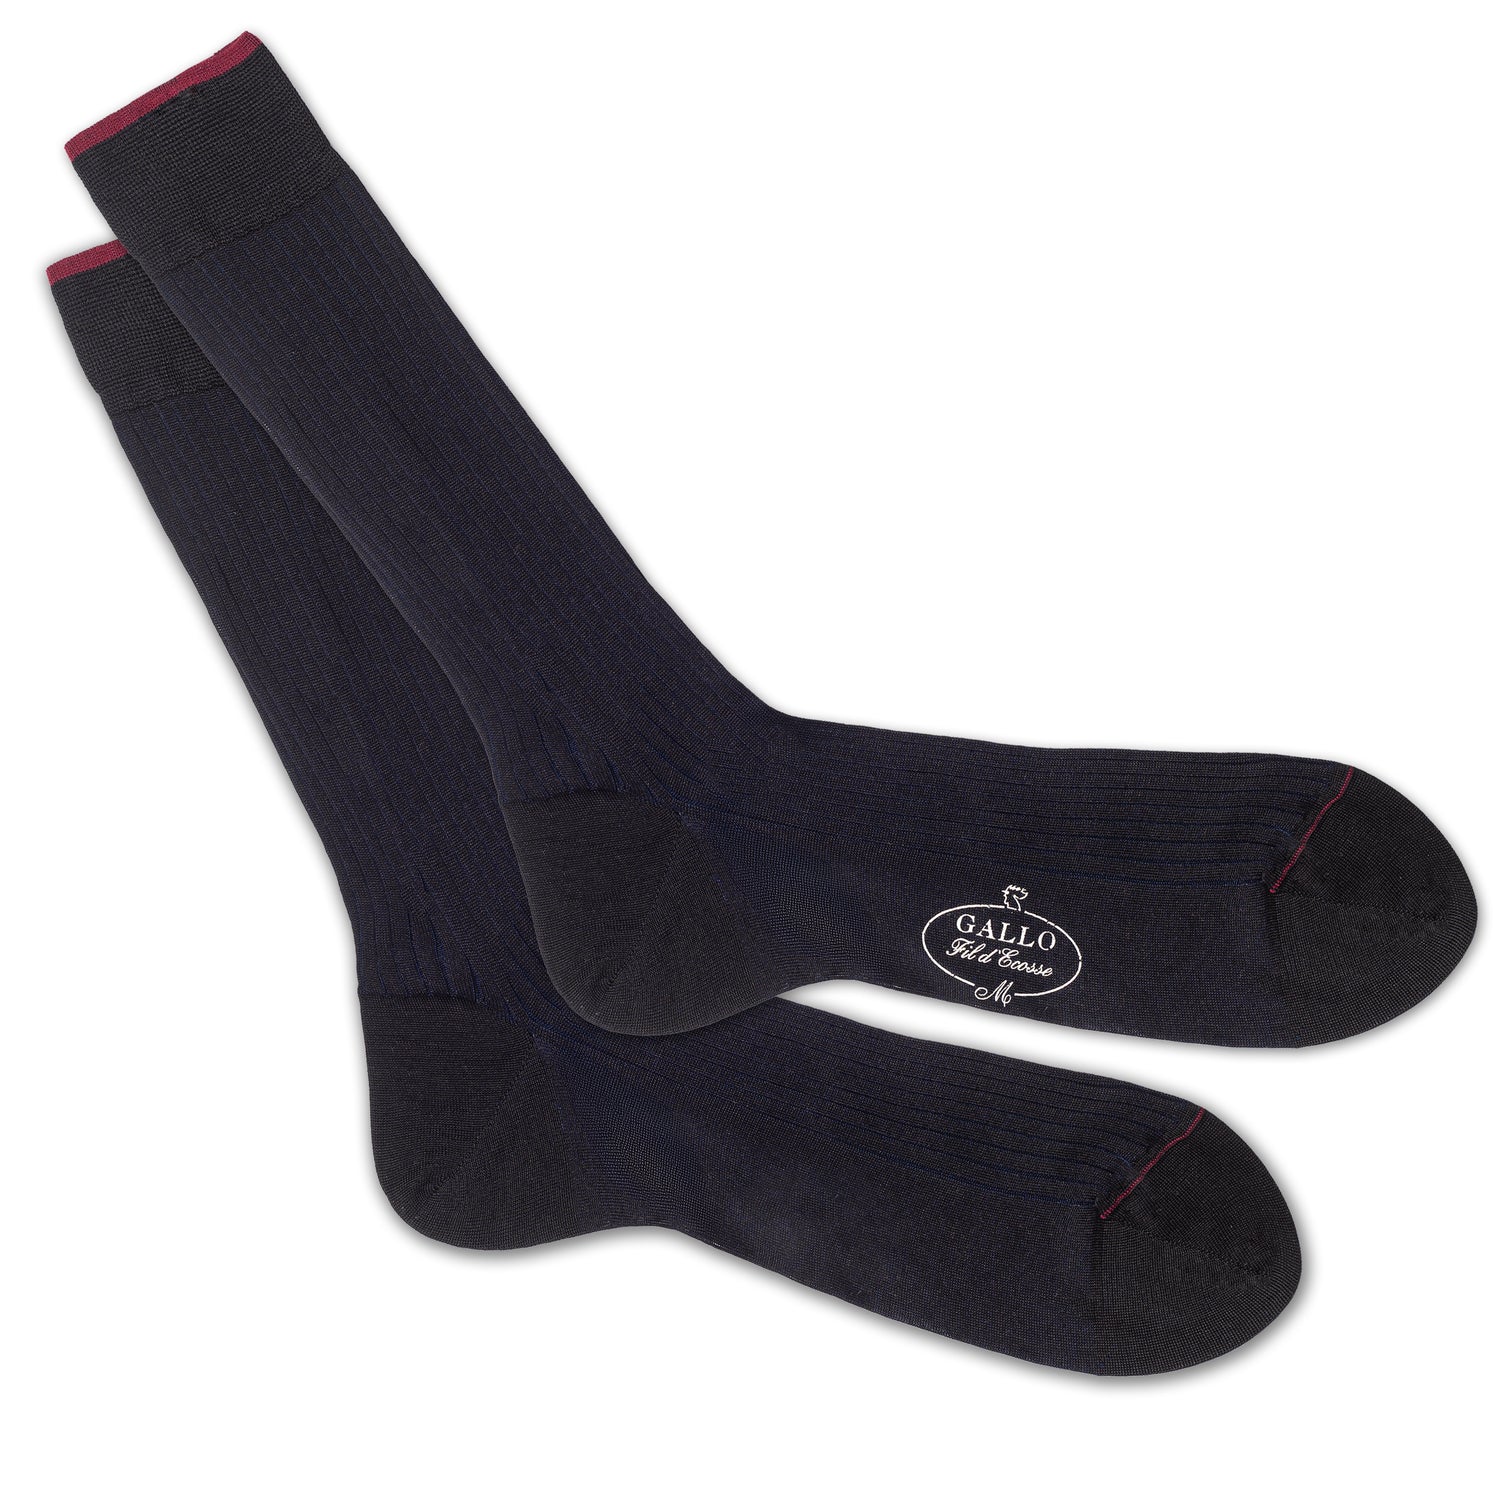 Italienische Herren-Socken, Breitripp-Struktur in schwarz und nacht blau unterlegt, von GALLO, aus 100% Baumwolle Gefertigt in Italien. Paarweise Ansicht